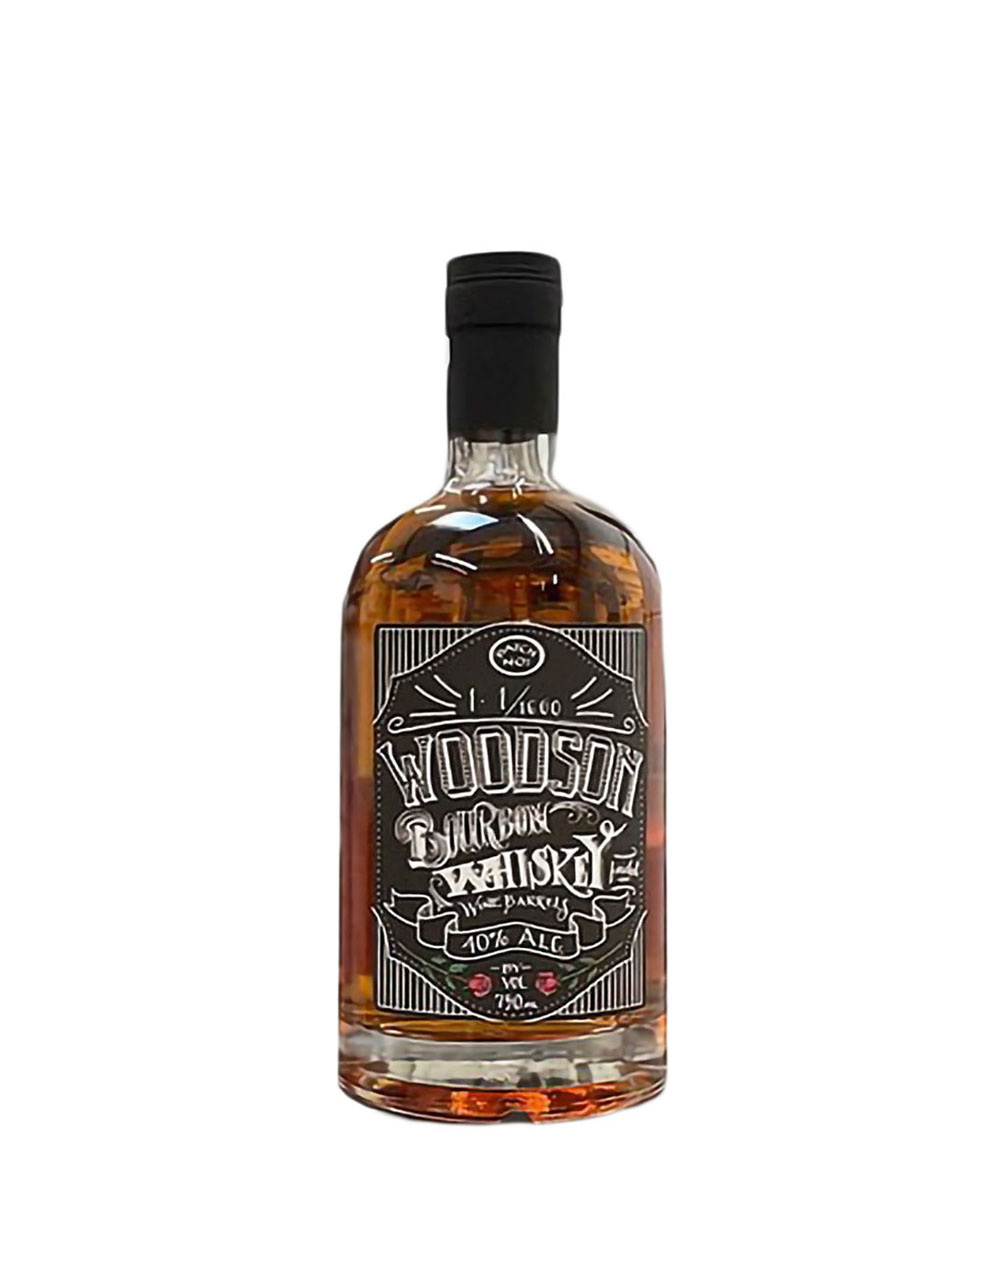 Woodson Bourbon Batch 2